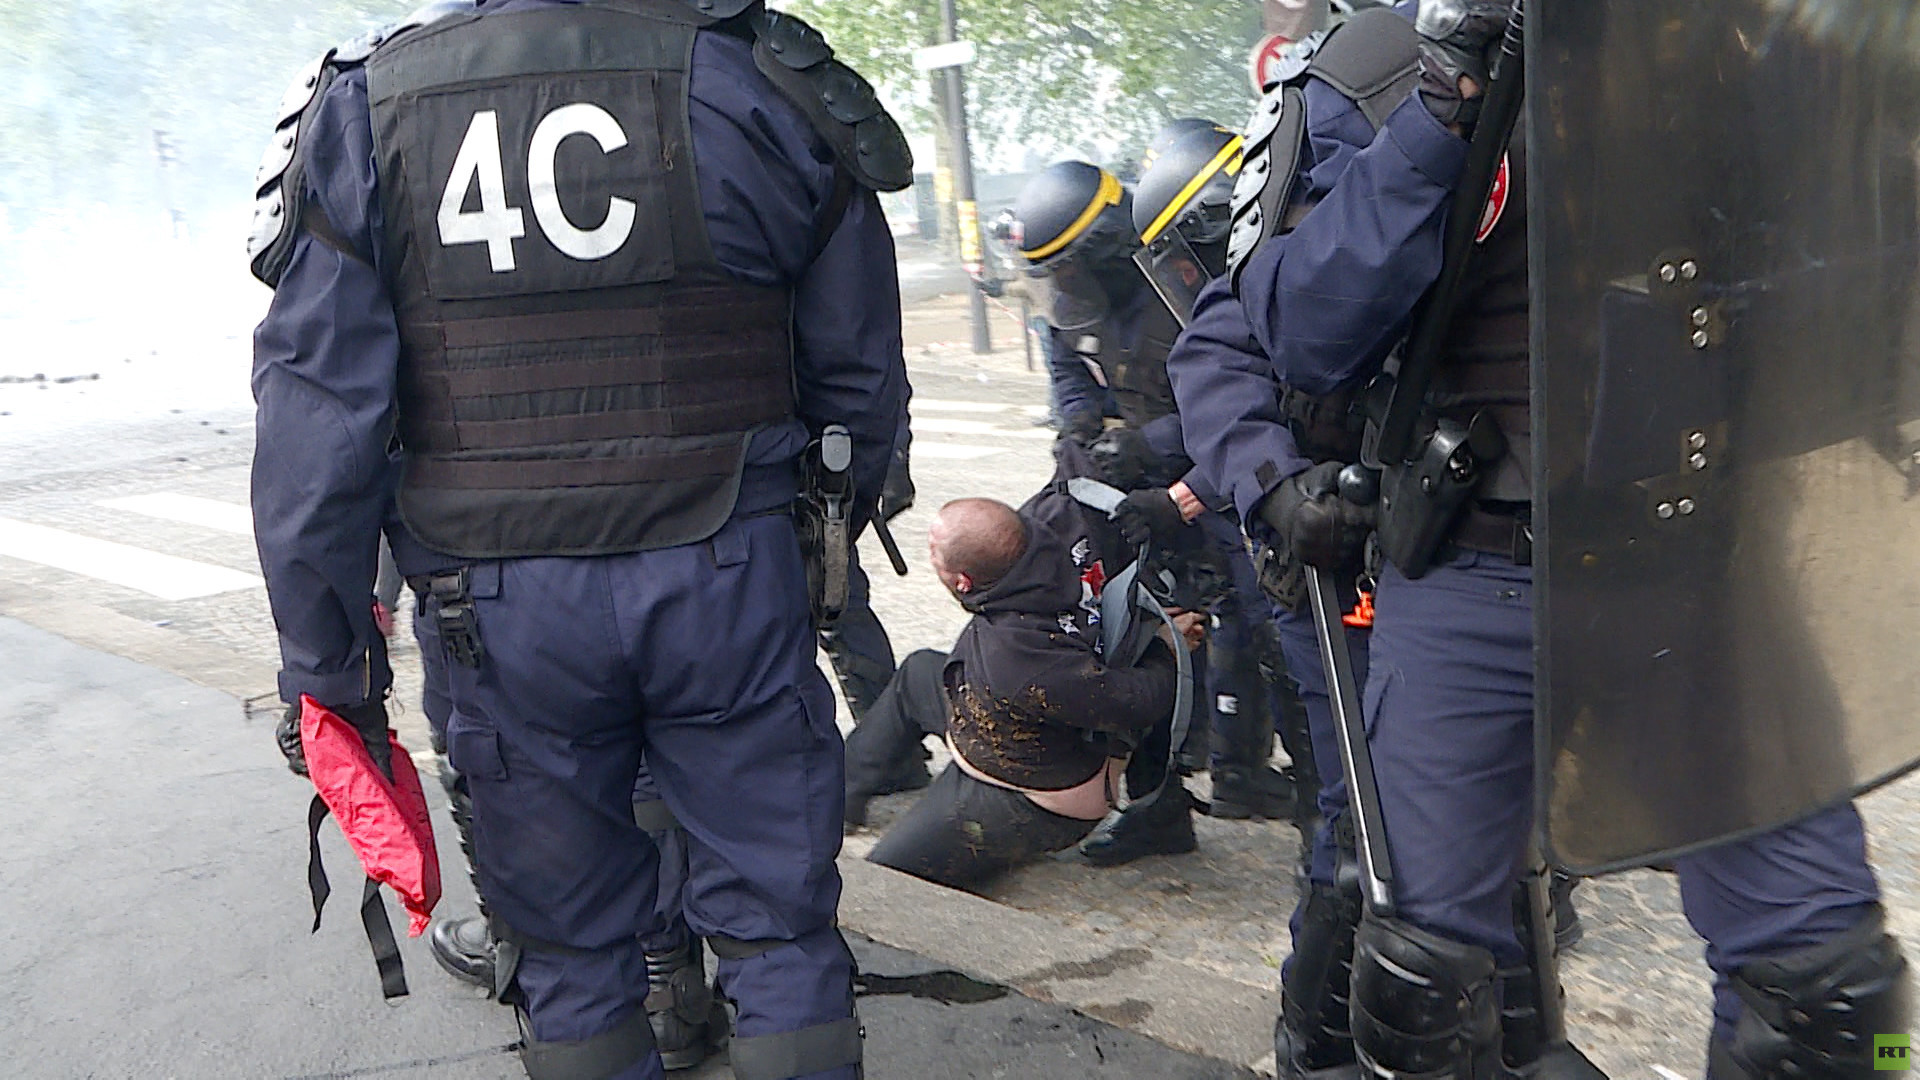 Violences du Premier mai : «Sans doute des bandes d'extrême droite», selon Jean-Luc Mélenchon